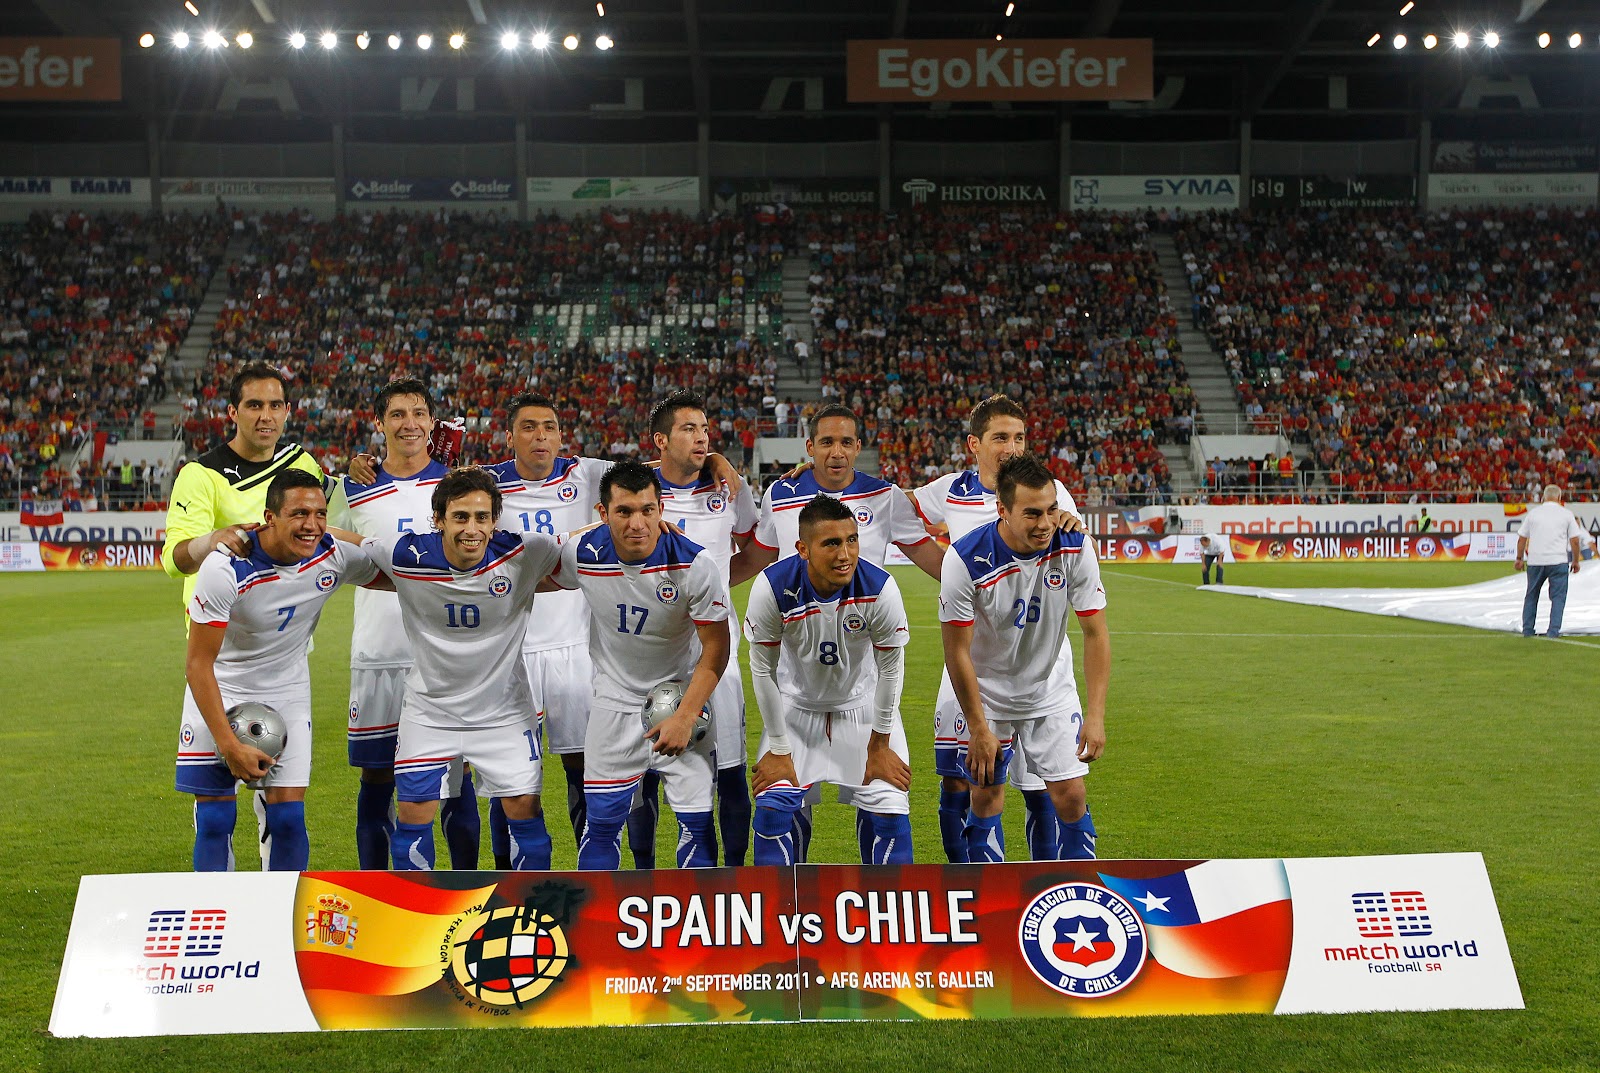 Formación de Chile ante España, amistoso disputado el 2 de septiembre de 2011